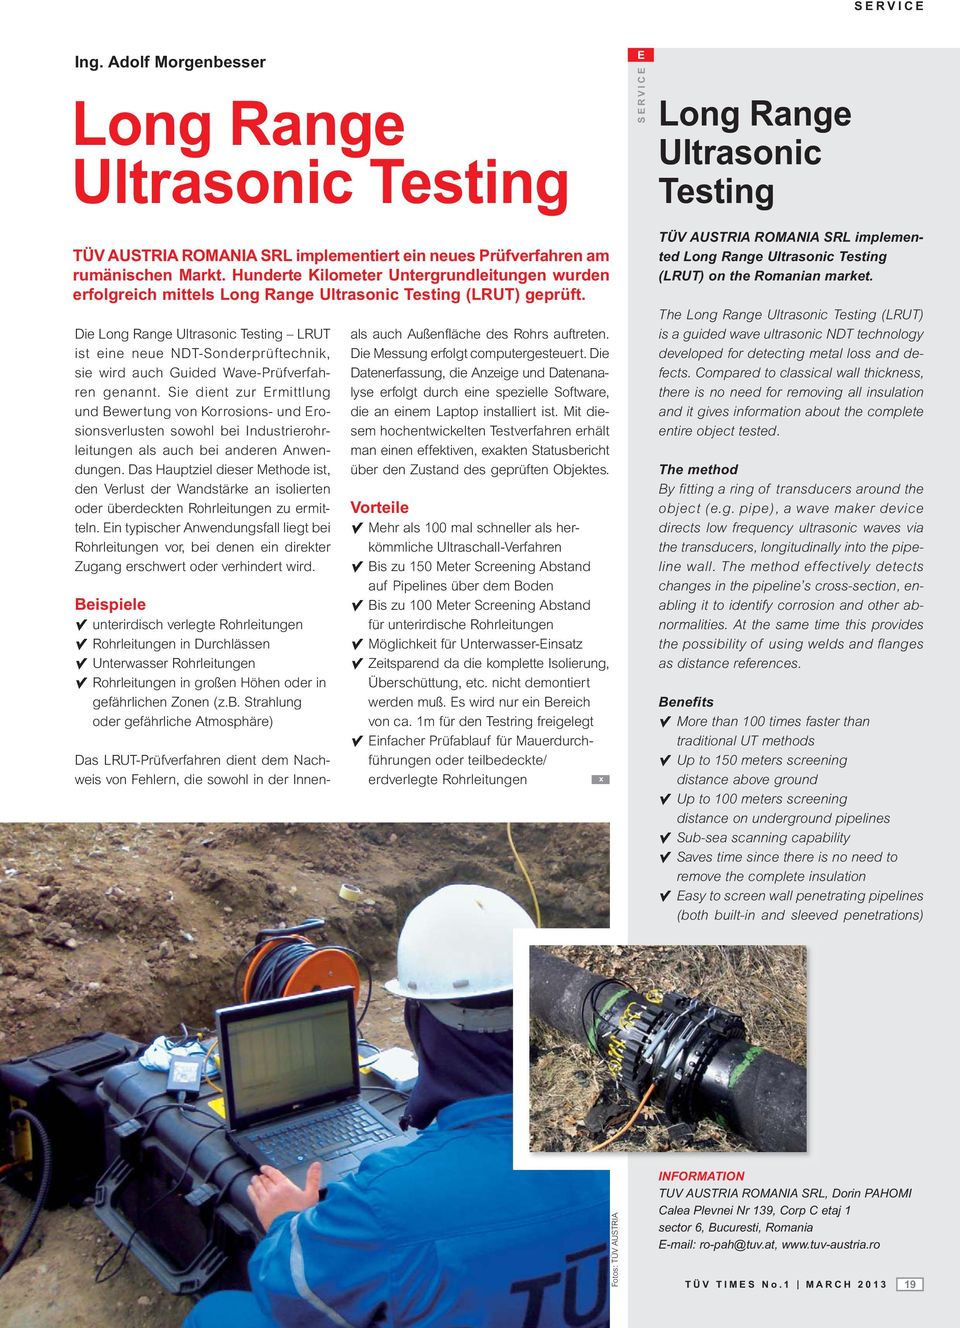 Die Long Range Ultrasonic Testing LRUT ist eine neue NDT-Sonderprüftechnik, sie wird auch Guided Wave-Prüfverfahren genannt.